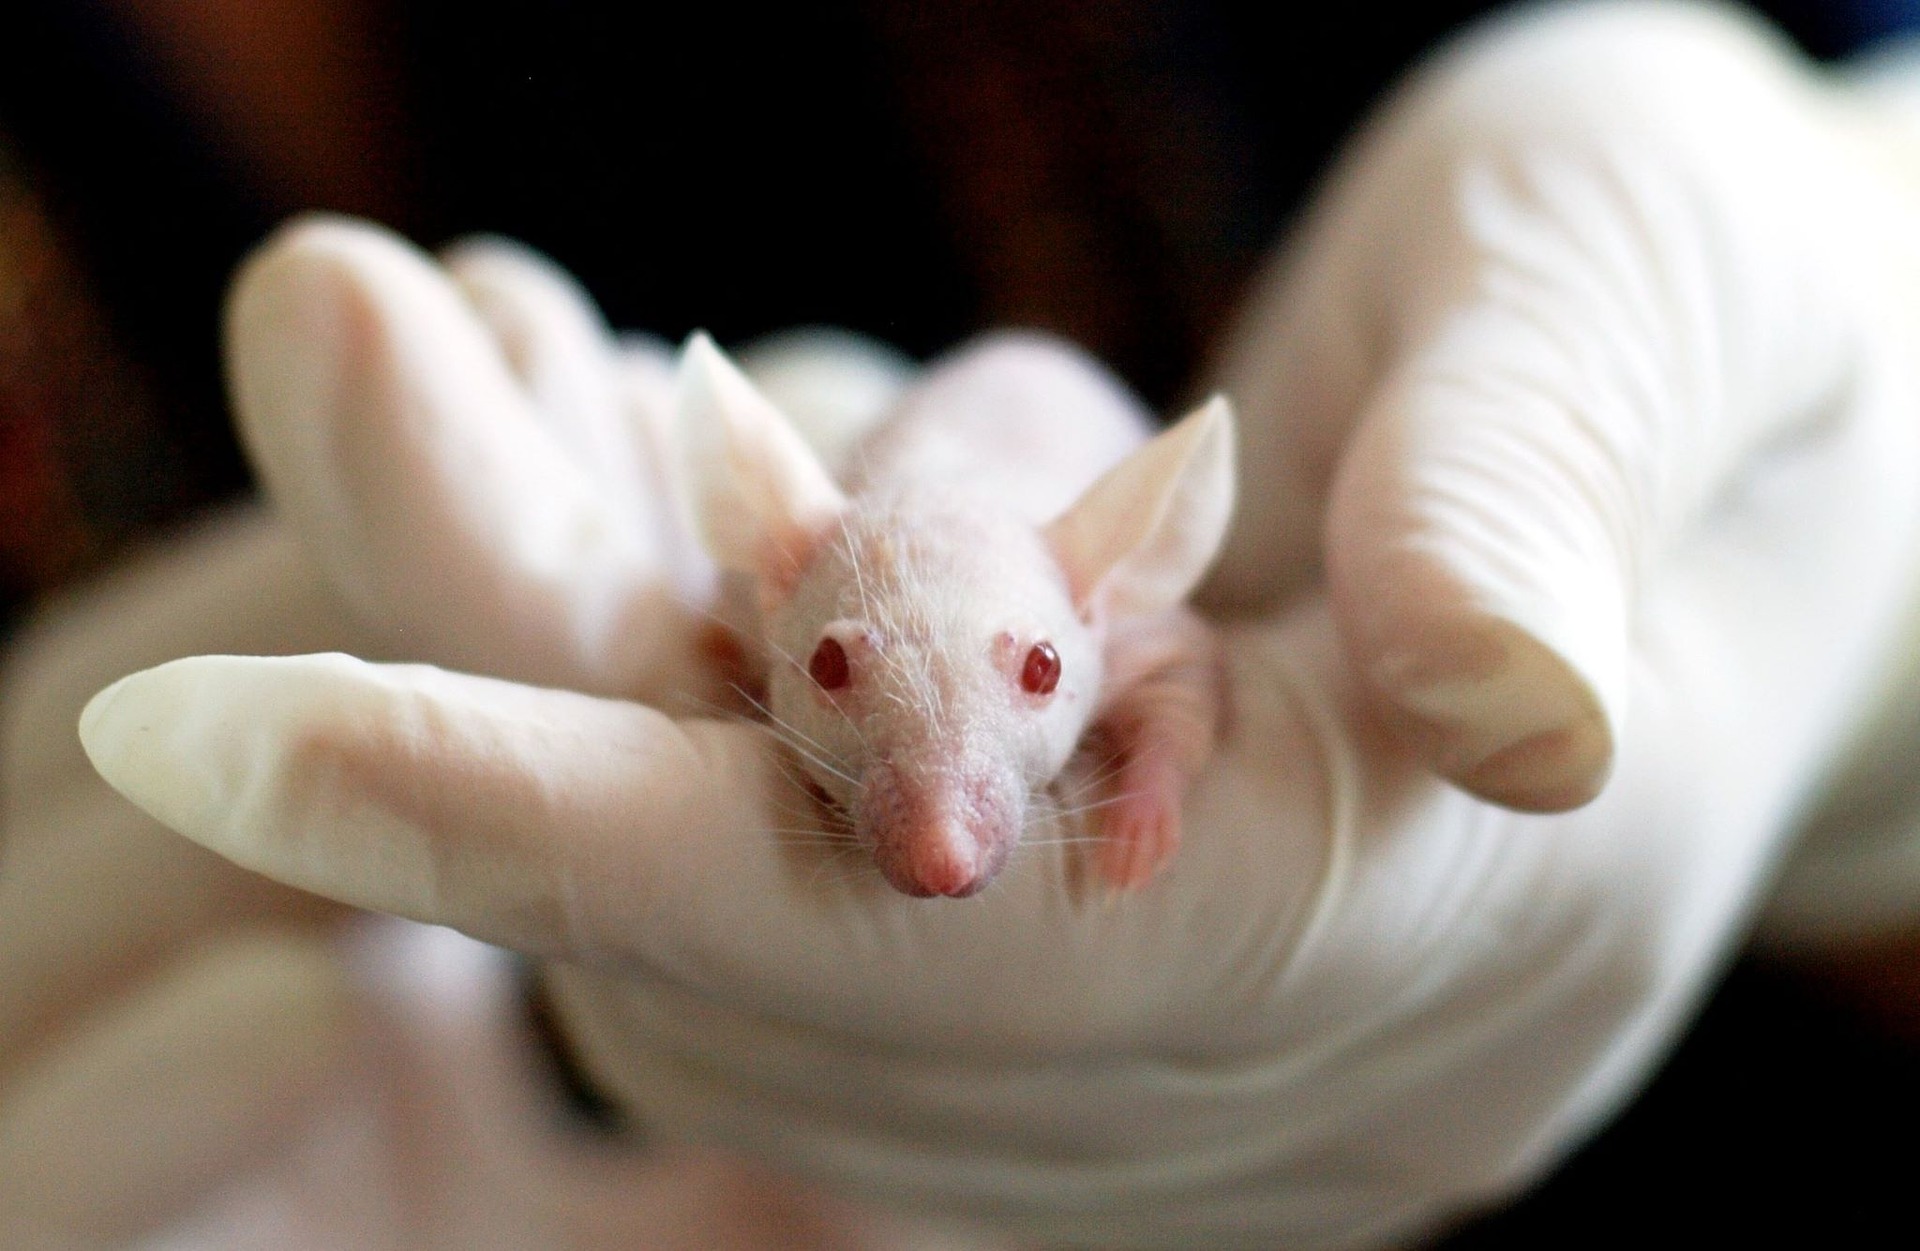 Biała myszka z laboratorium, gdzie toksyczne substancje są testowane na zwierzętach